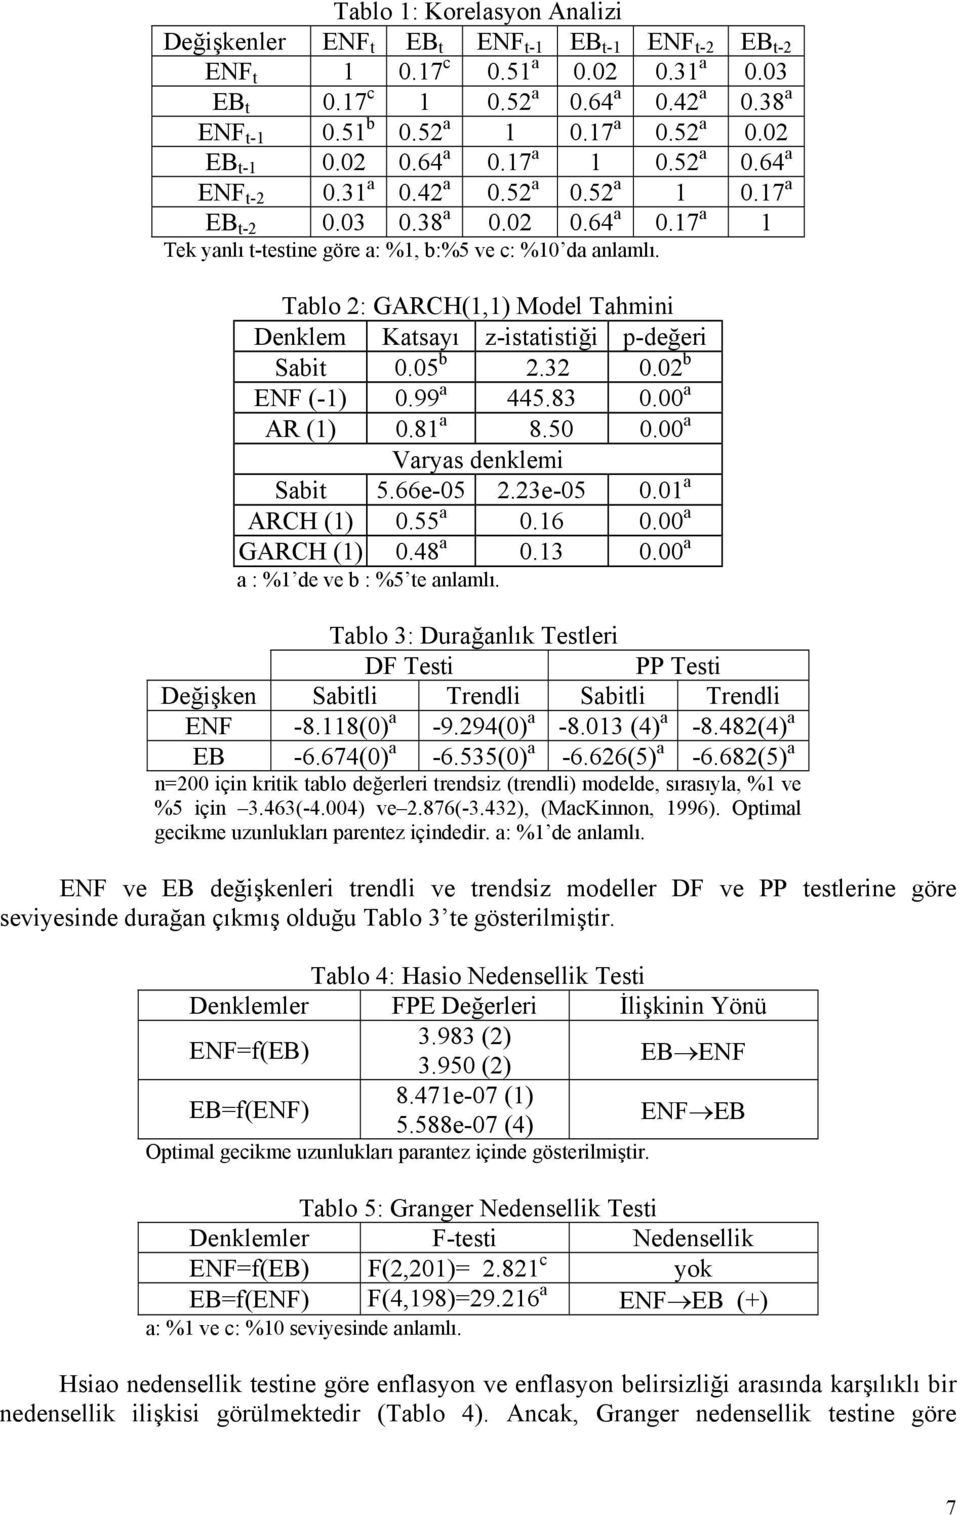 2 b ENF (-1).99 a 445.83. a AR (1).81 a 8.5. a Varyas denklemi Sabi 5.66e-5 2.23e-5.1 a ARCH (1).55 a.16. a GARCH (1).48 a.13. a a : %1 de ve b : %5 e anlamlı.